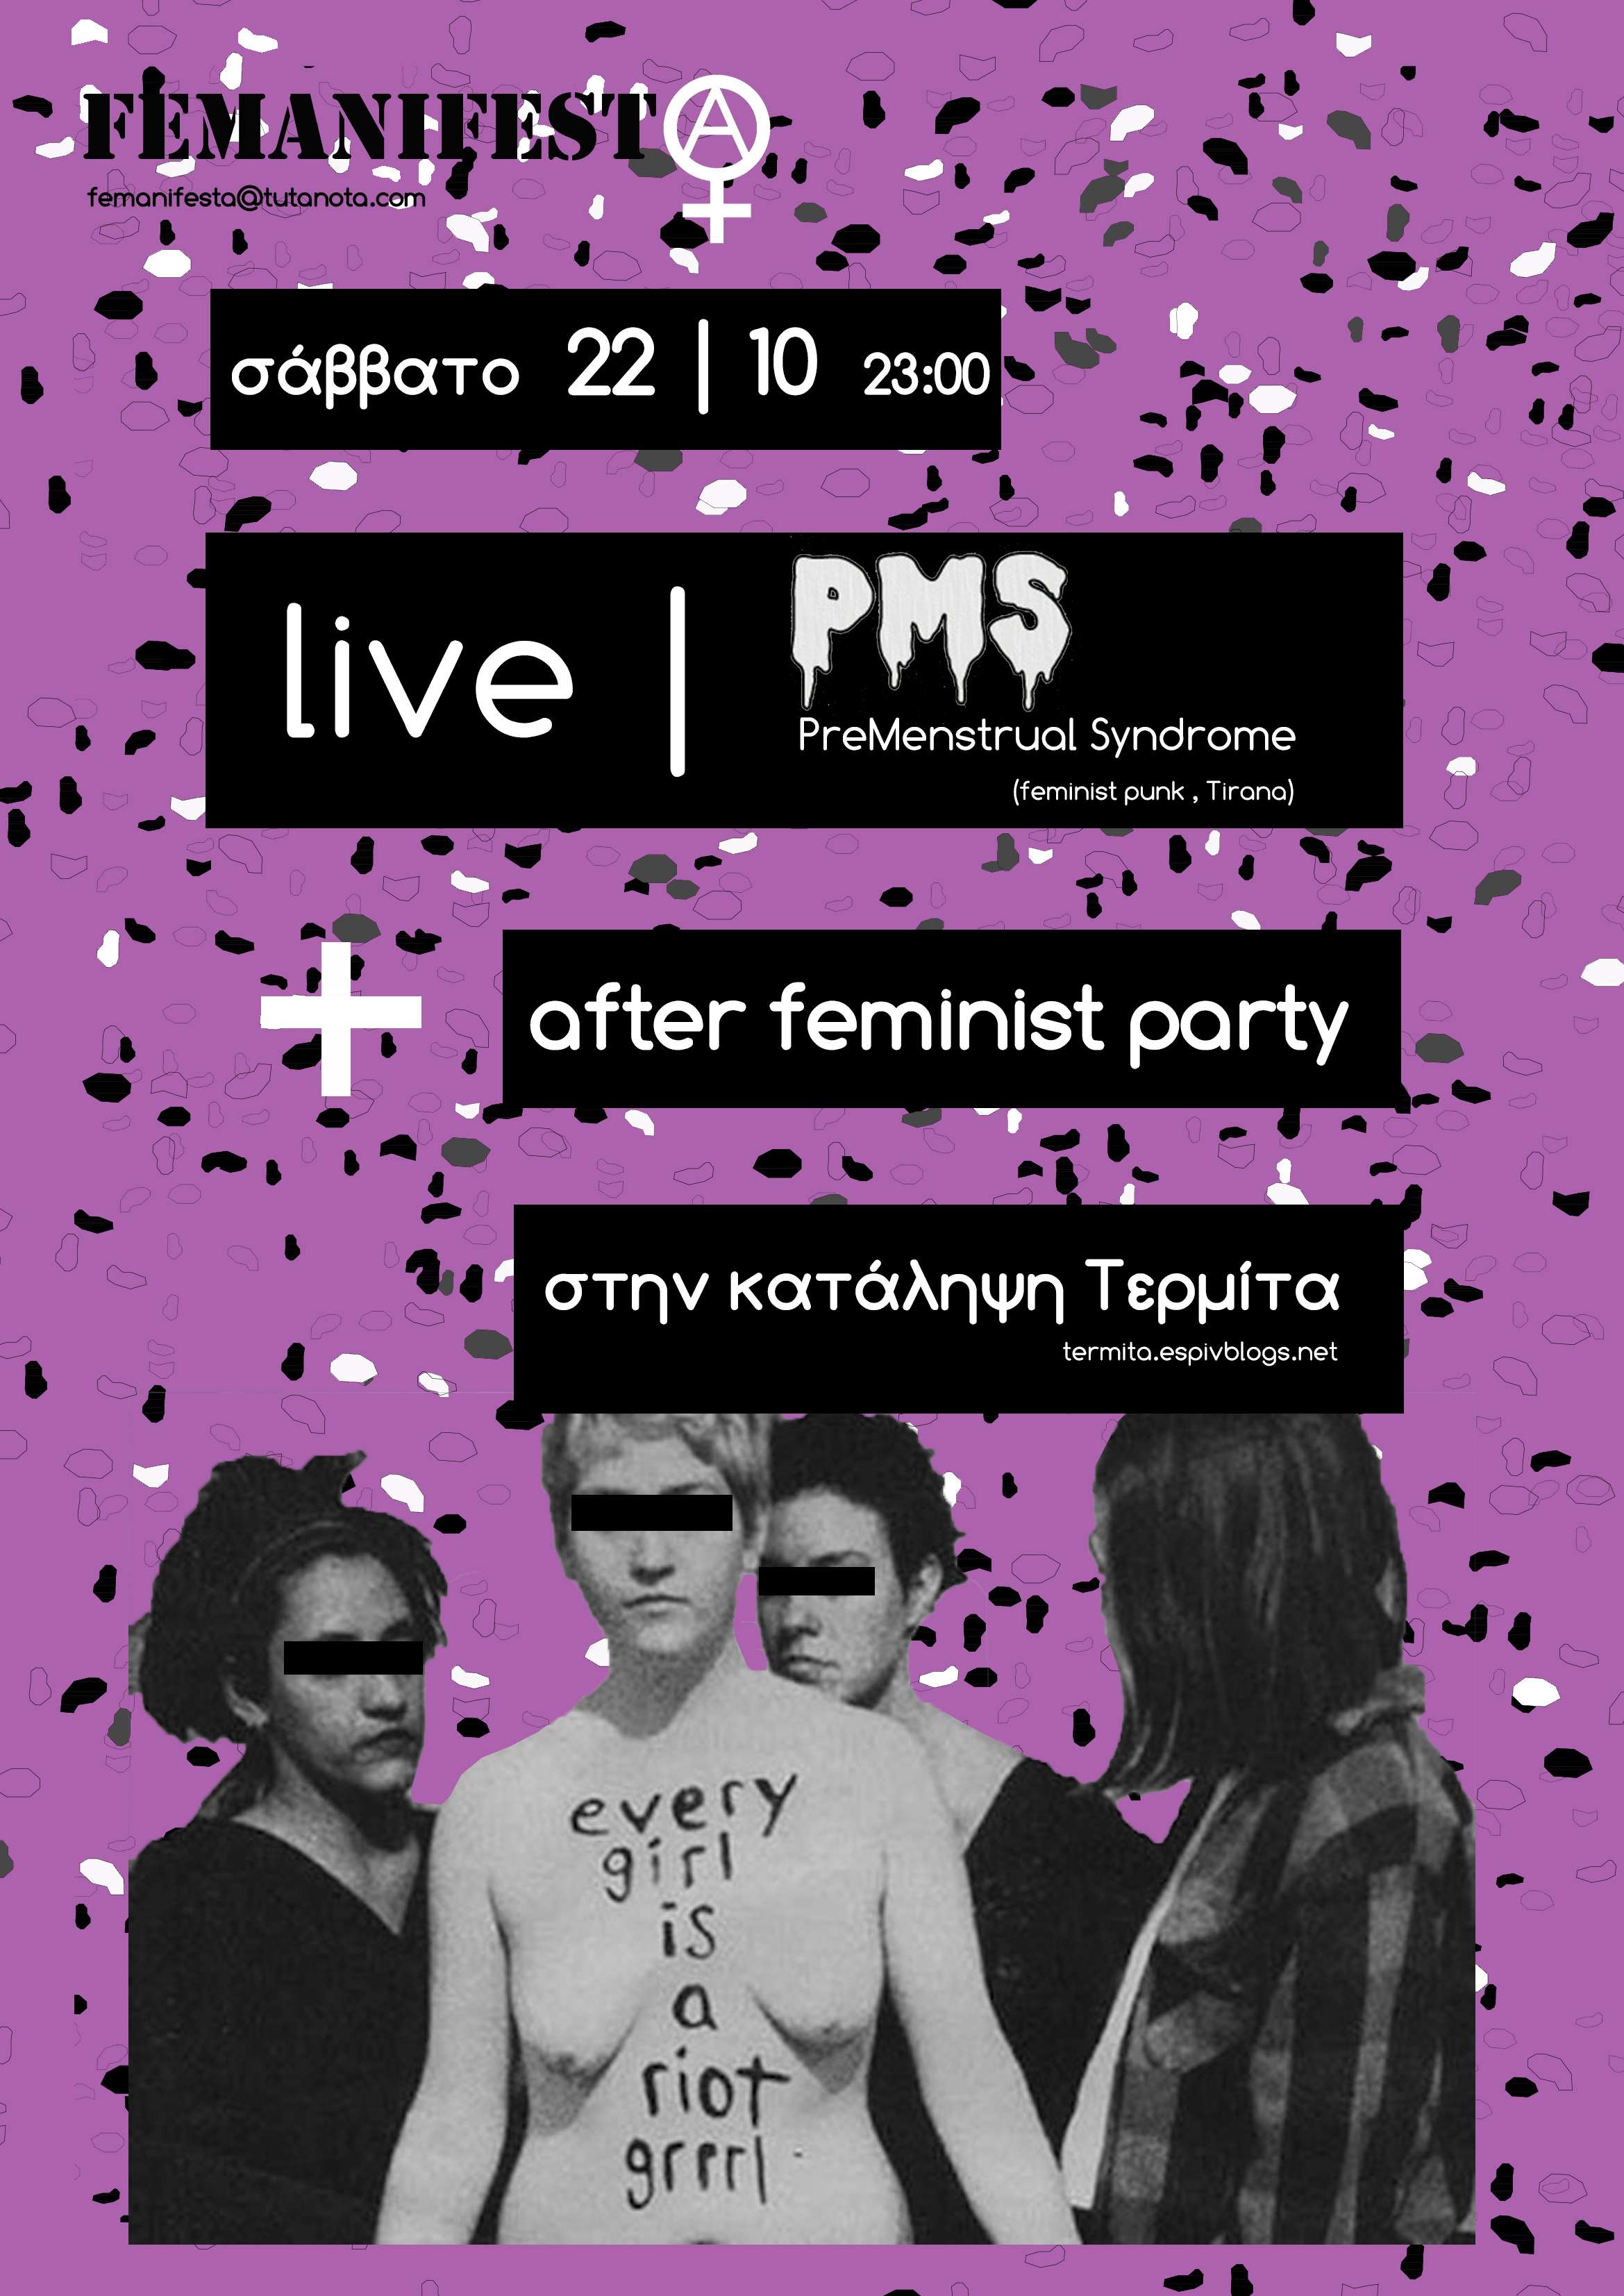 Βόλος: PreMenstrual Syndrome live + after feminist party [Σάββατο 22/10, 23:00]